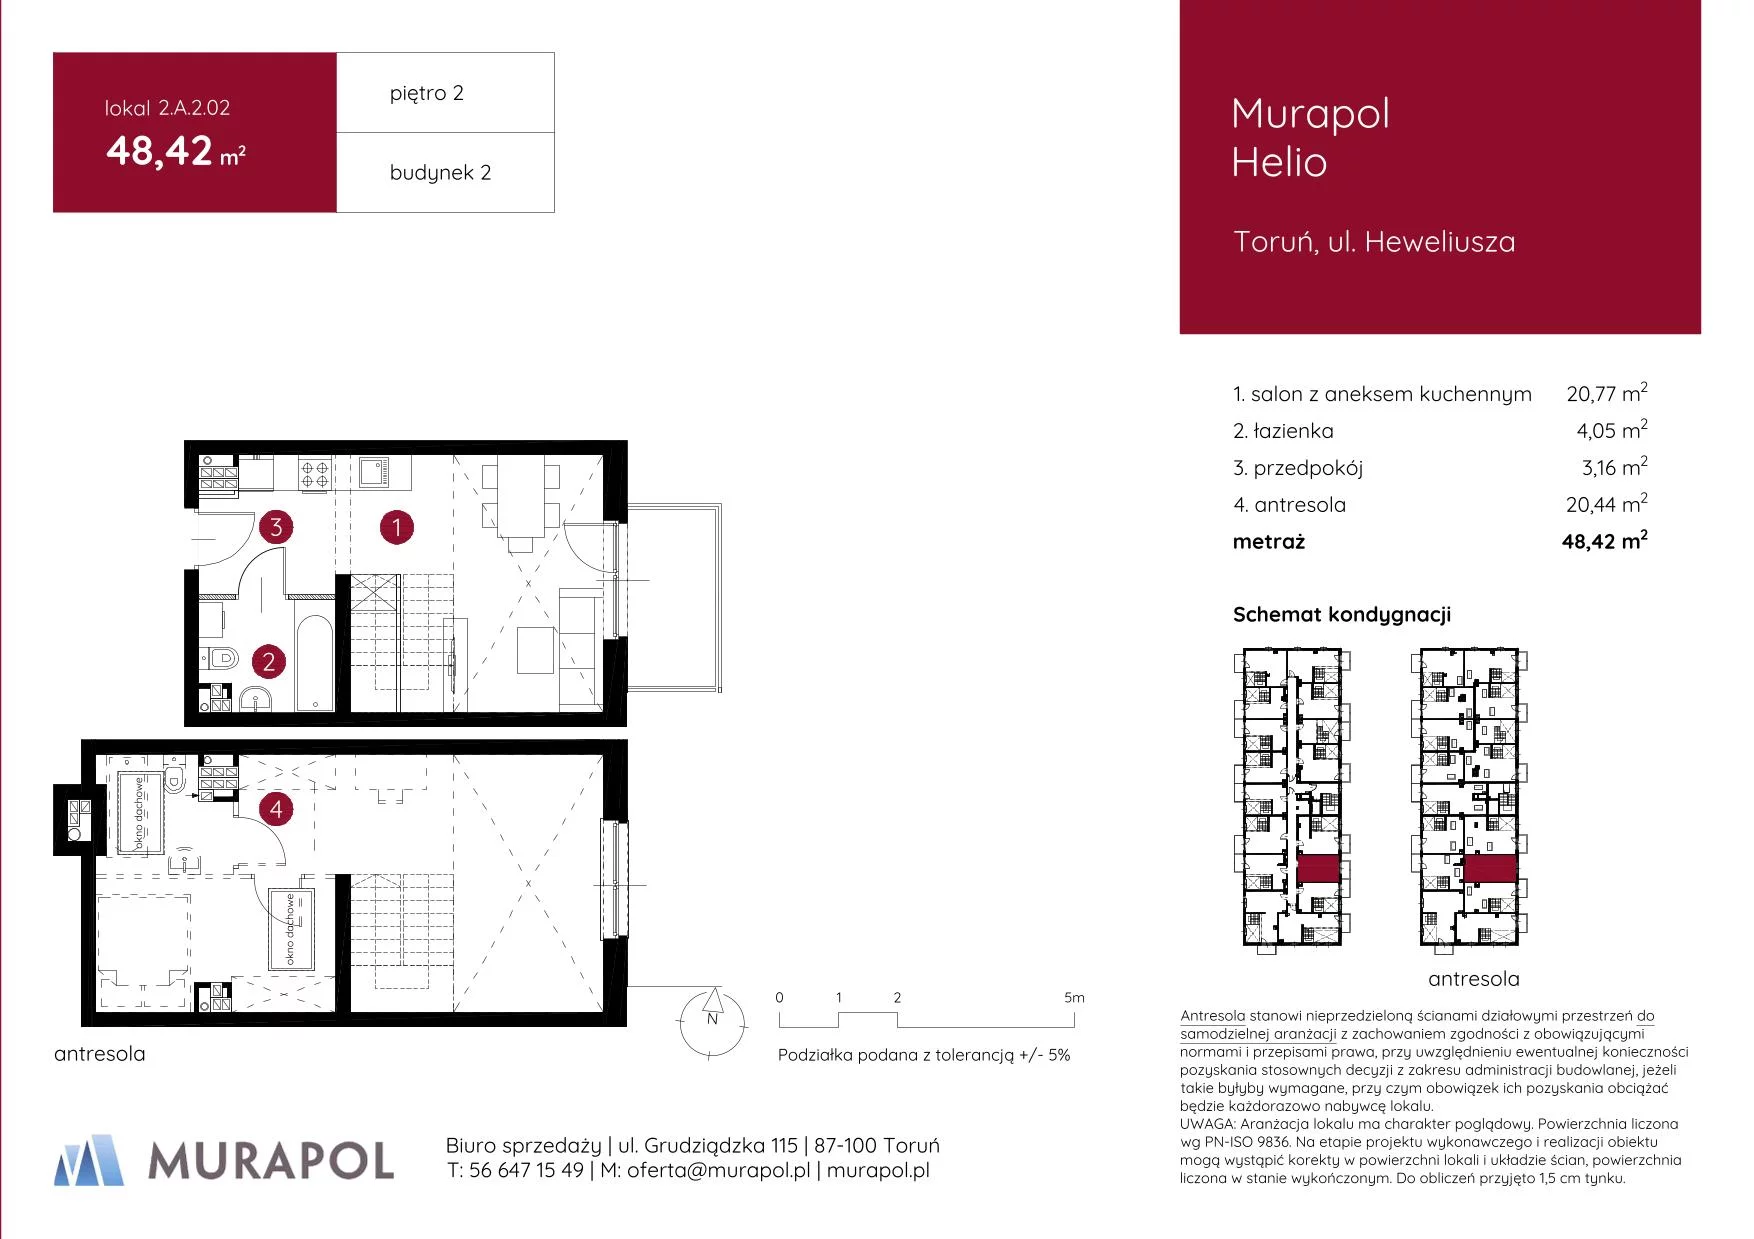 Mieszkanie 48,42 m², piętro 2, oferta nr 2.A.2.02, Murapol Helio, Toruń, Wrzosy, JAR, ul. Heweliusza